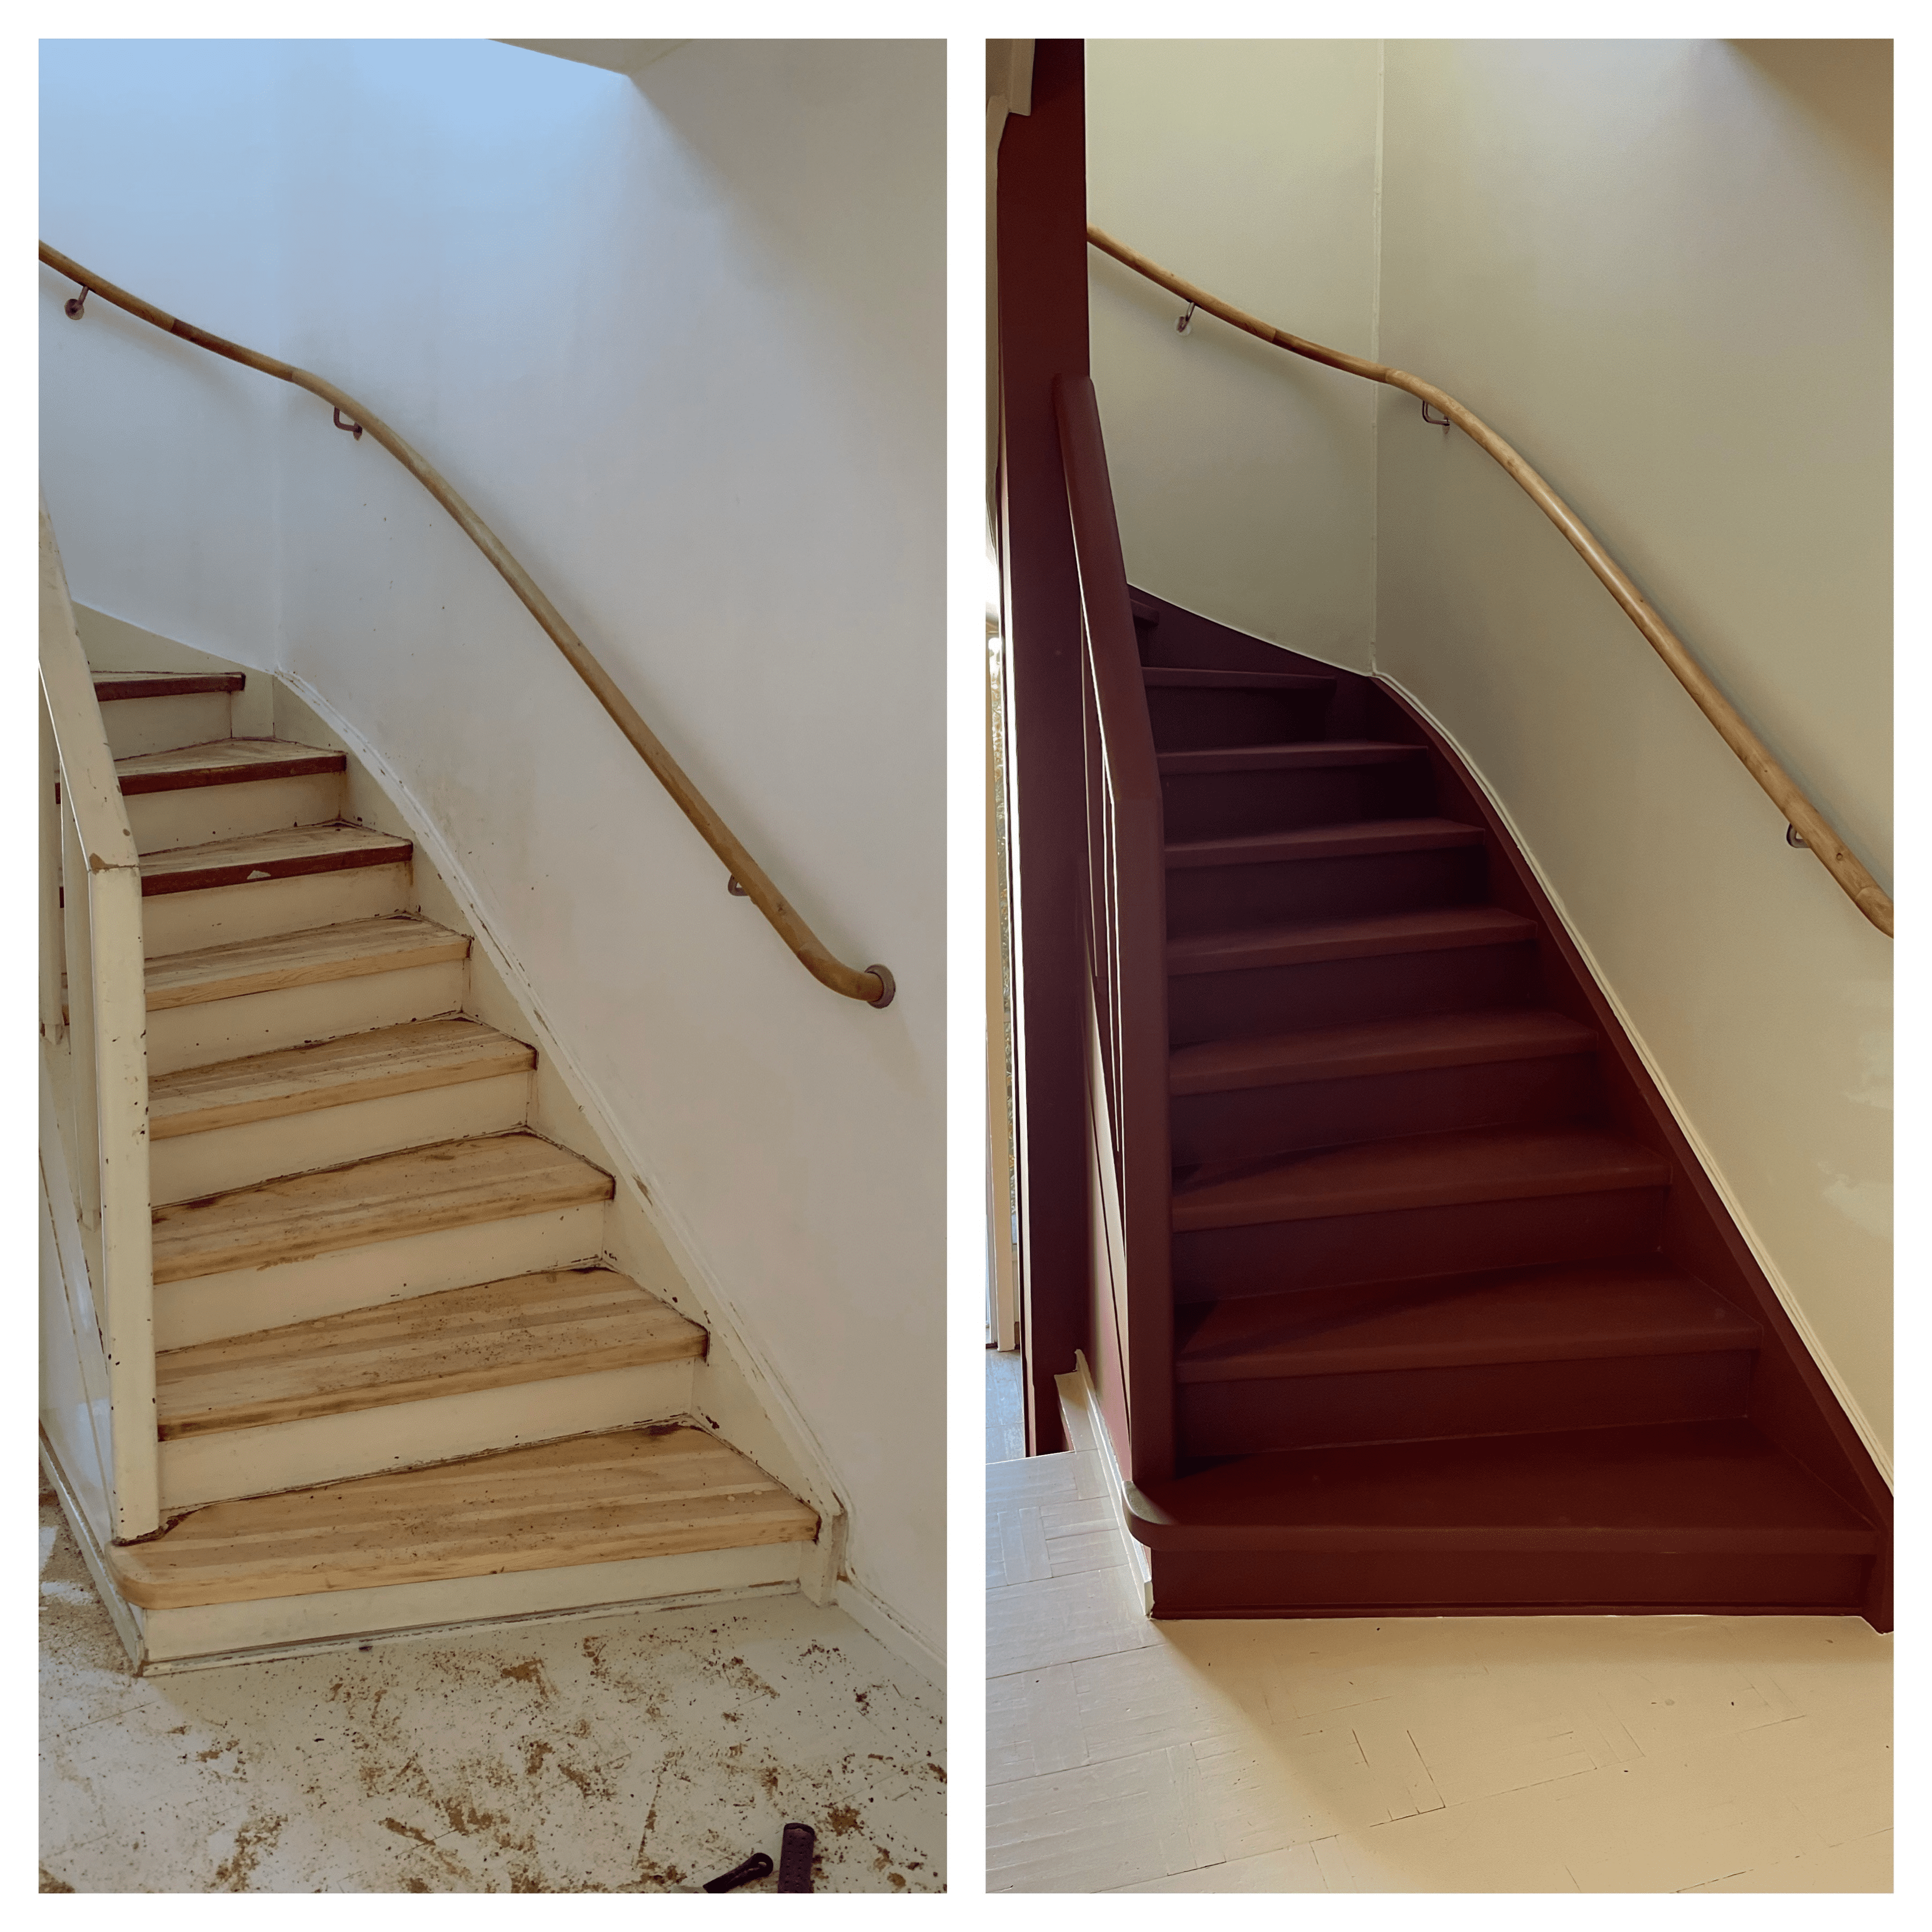 Referensjobb "Renovering trappa" utfört av E&M Allservice